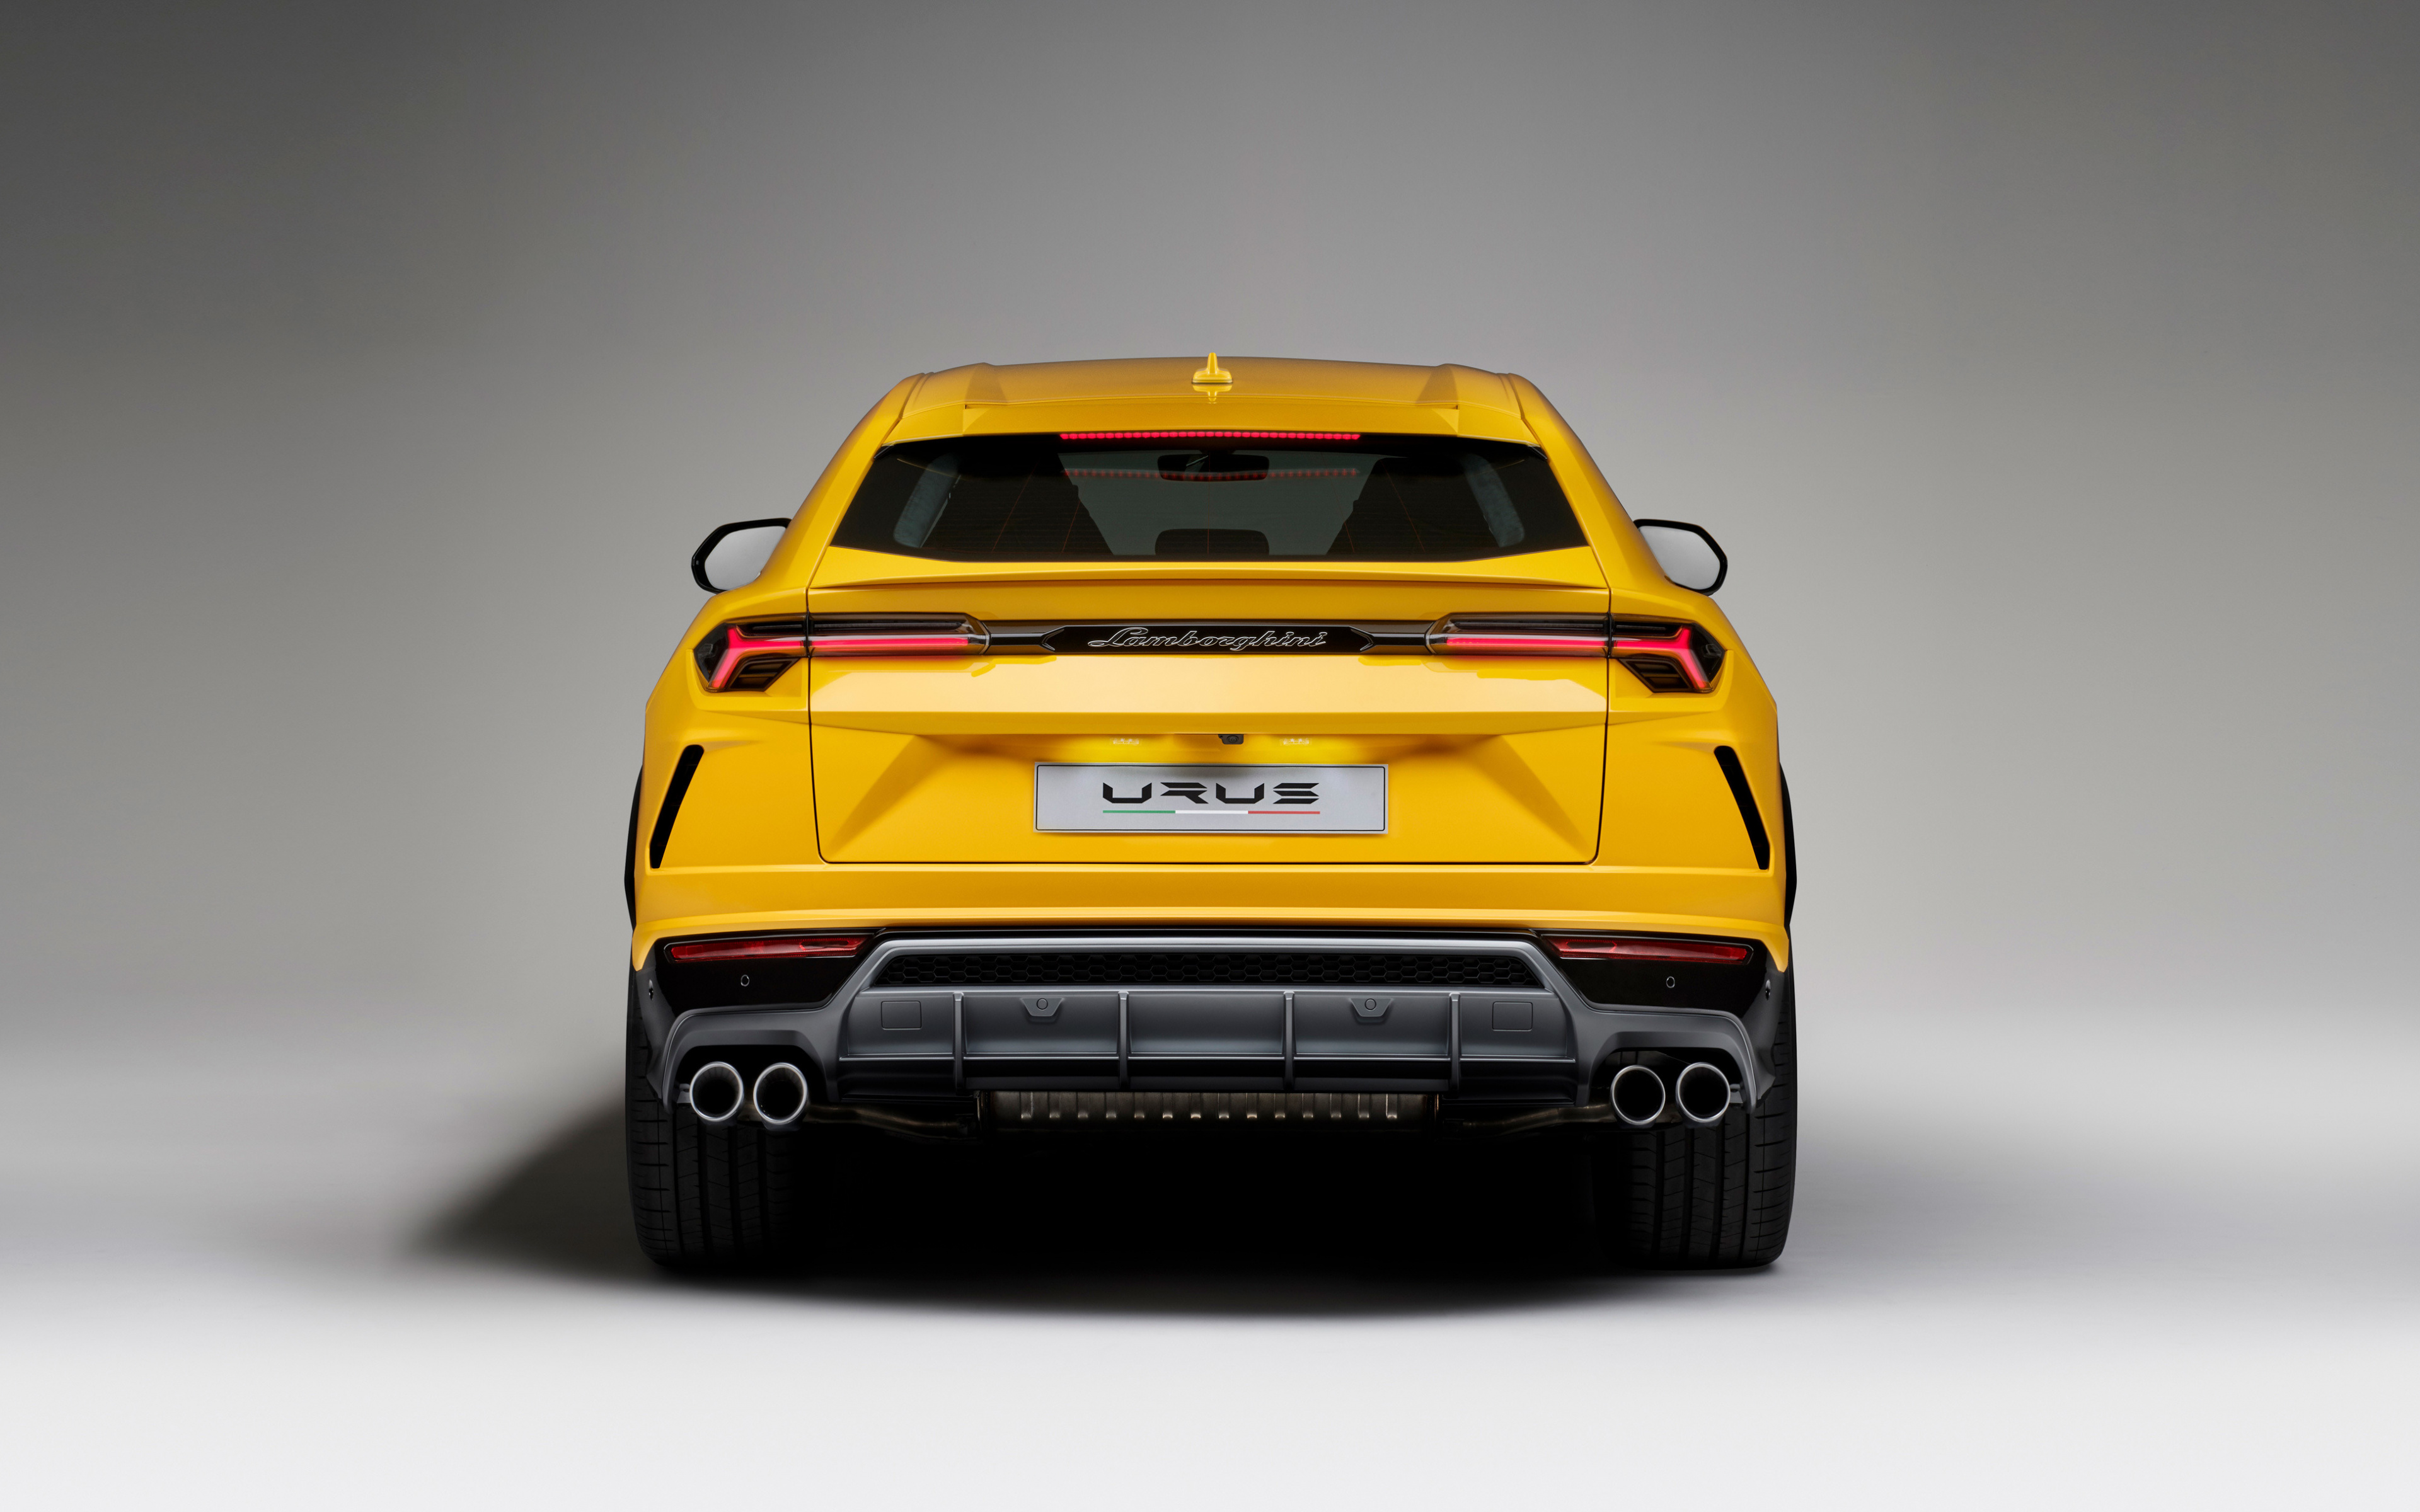 Lamborghini Urus, Yellow Car, Rear View, Wallpaper - Lamborghini Urus Back - HD Wallpaper 